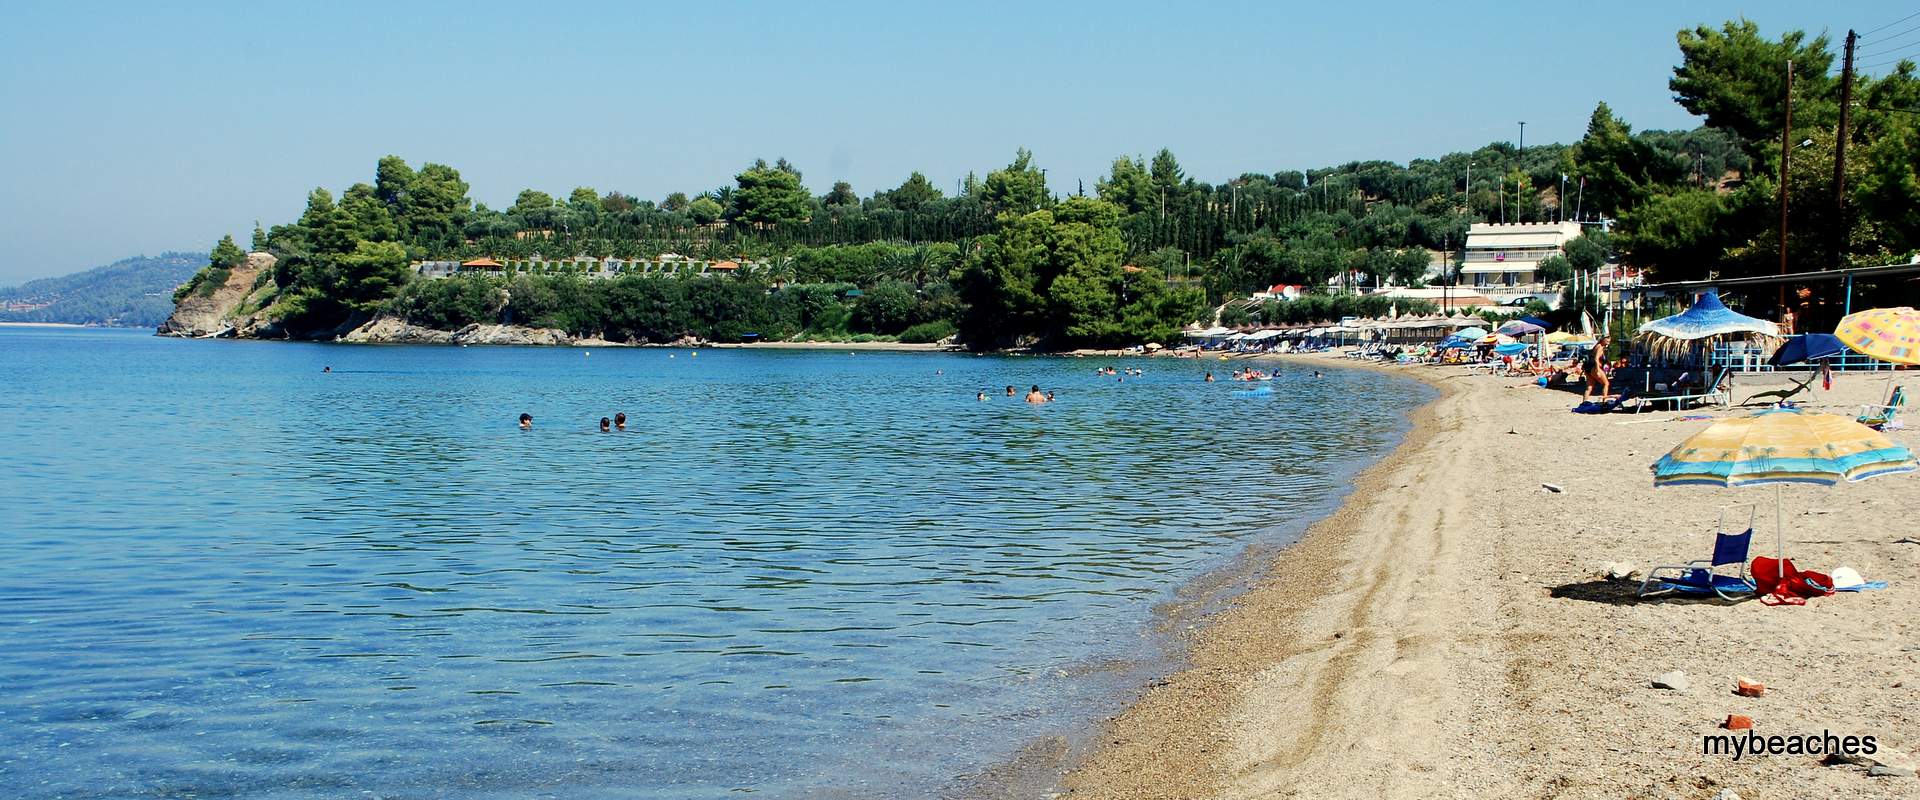 Παράδεισος παραλία, Σιθωνία, Χαλκιδική, Ελλάδα